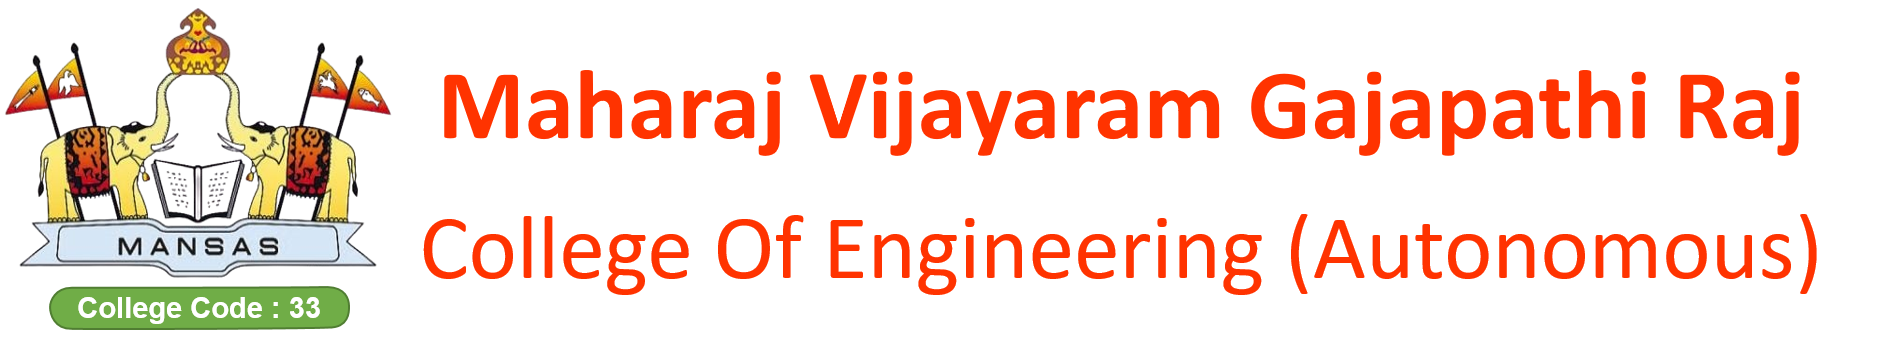 MVGR College of Engineering